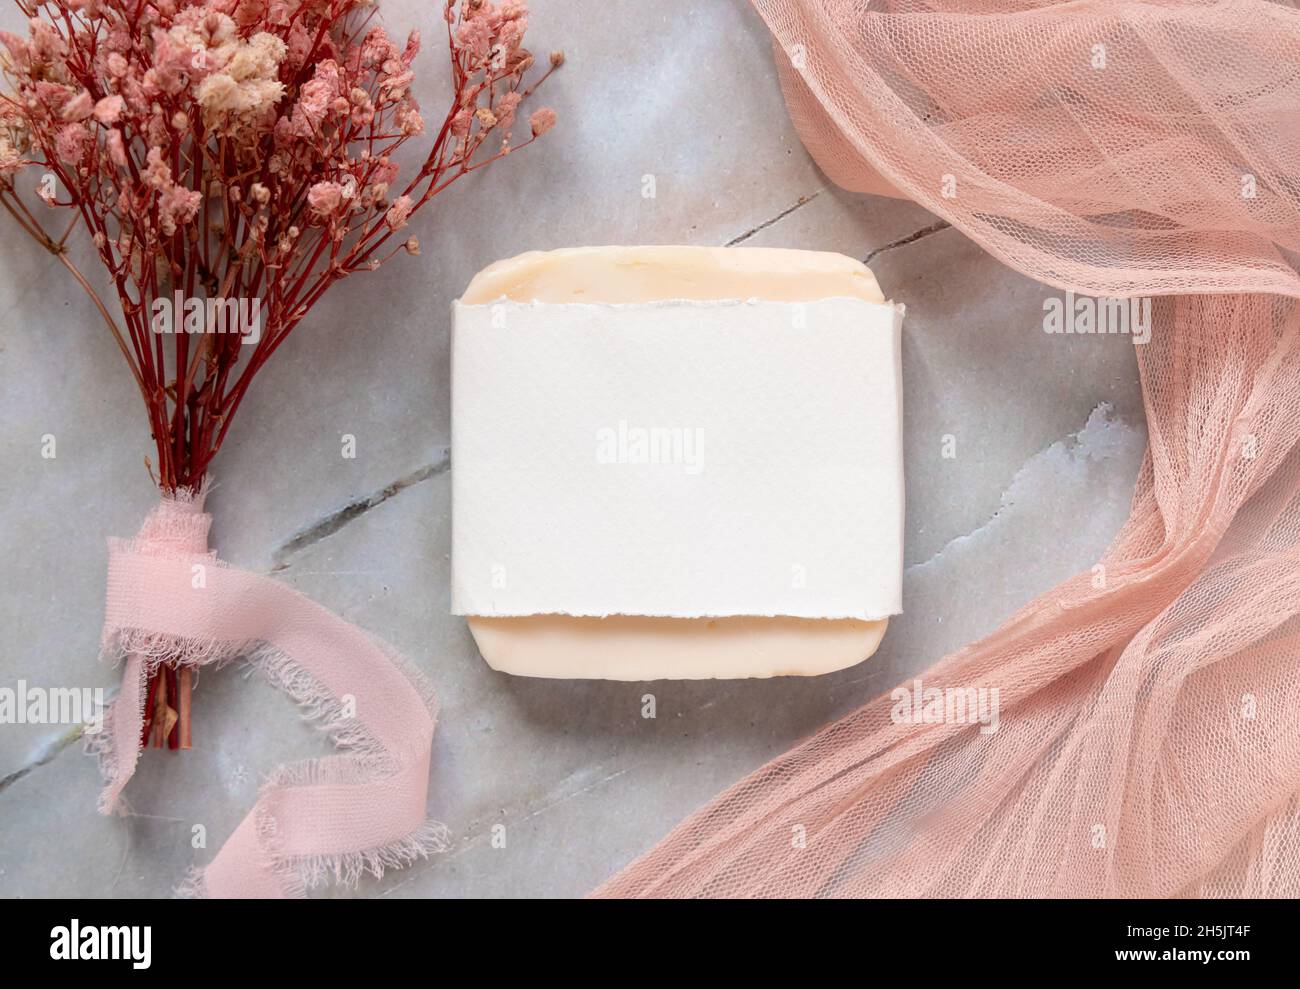 Barra de jabón hecha a mano sobre una mesa de mármol con paquete de papel,  con tejido de tulle rosa y flores secas alrededor, vista superior. Jabón  mockup plana la Fotografía de